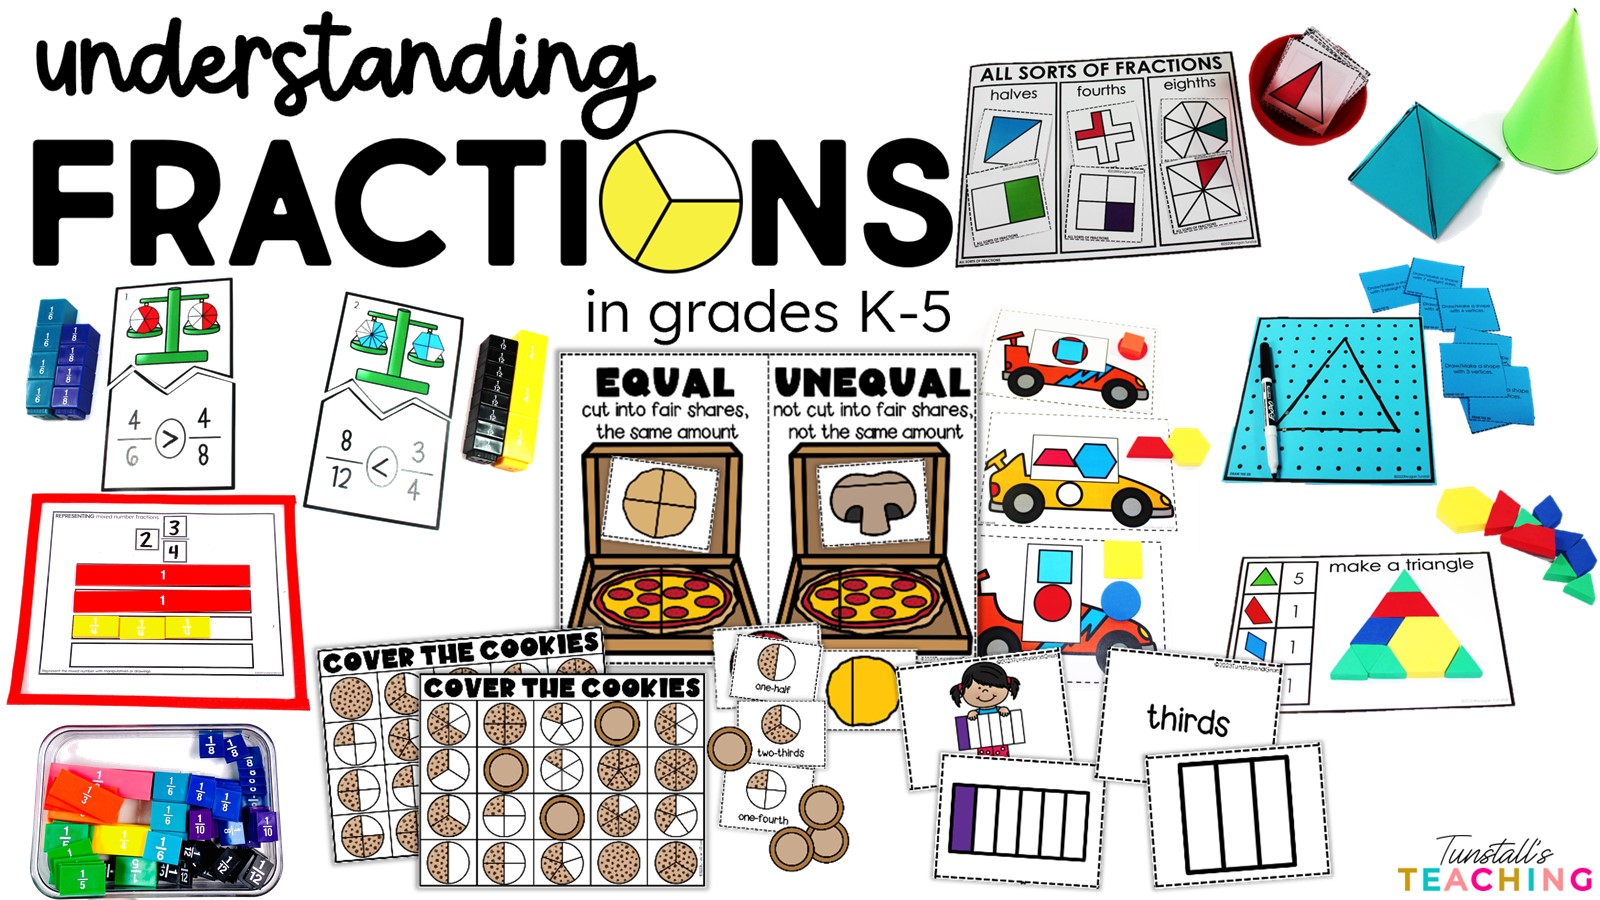 Understanding Fractions K-5